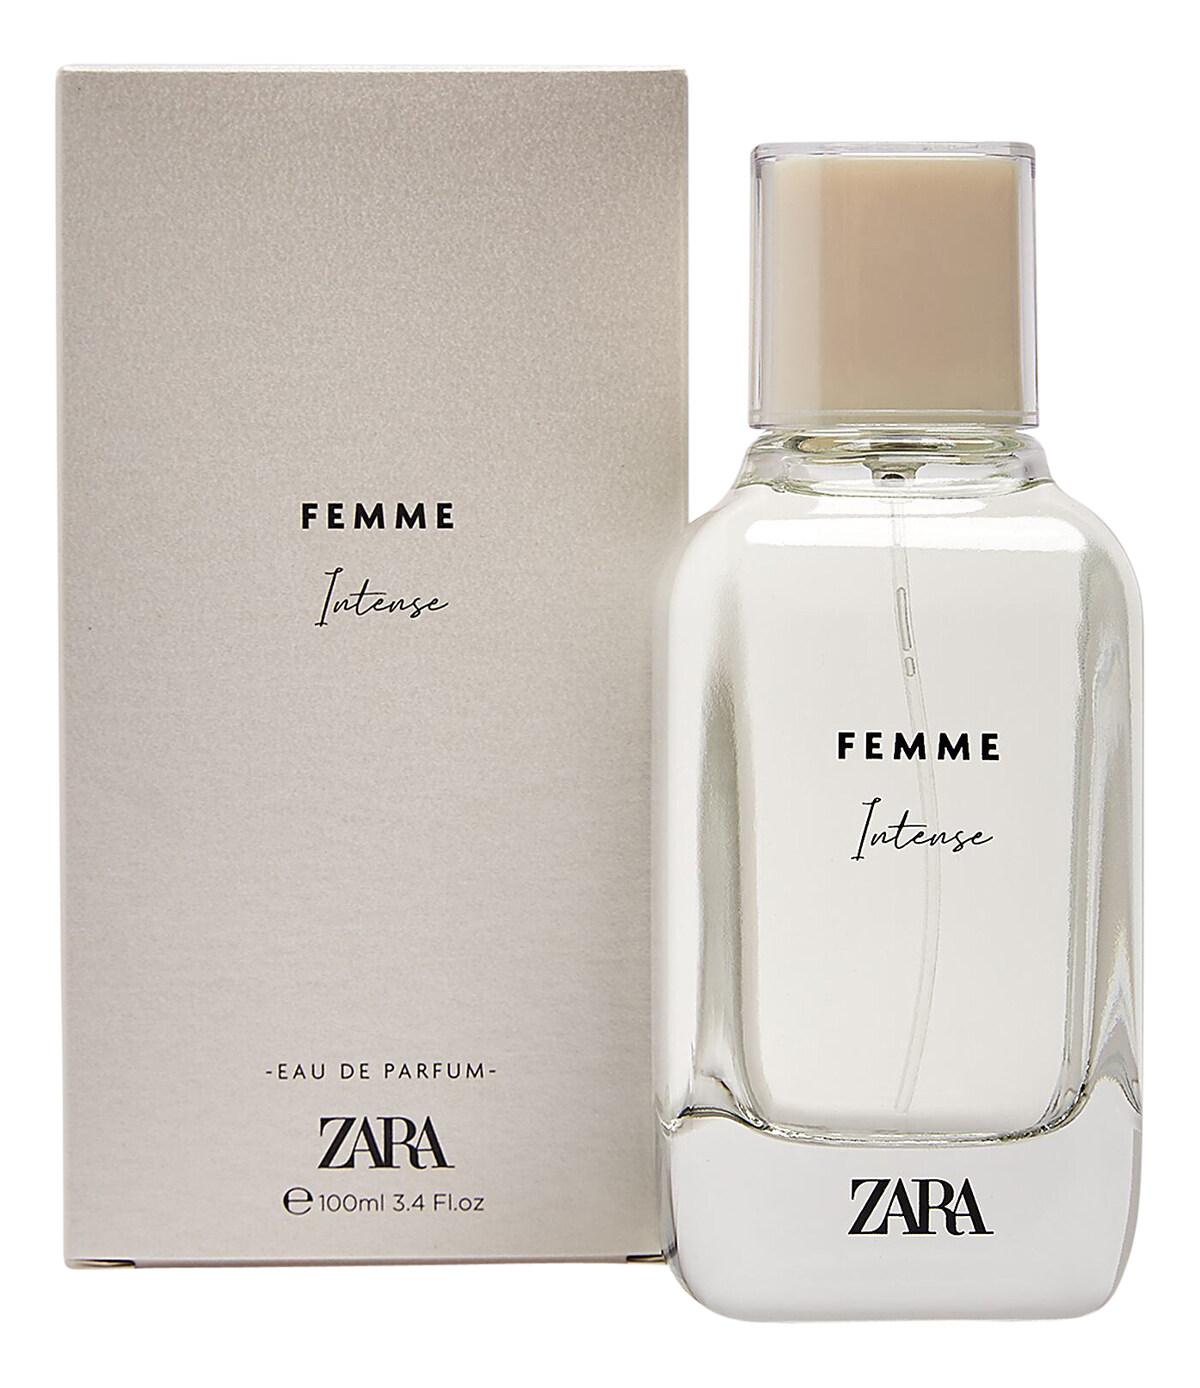 Parfum Zara Terenak - Homecare24